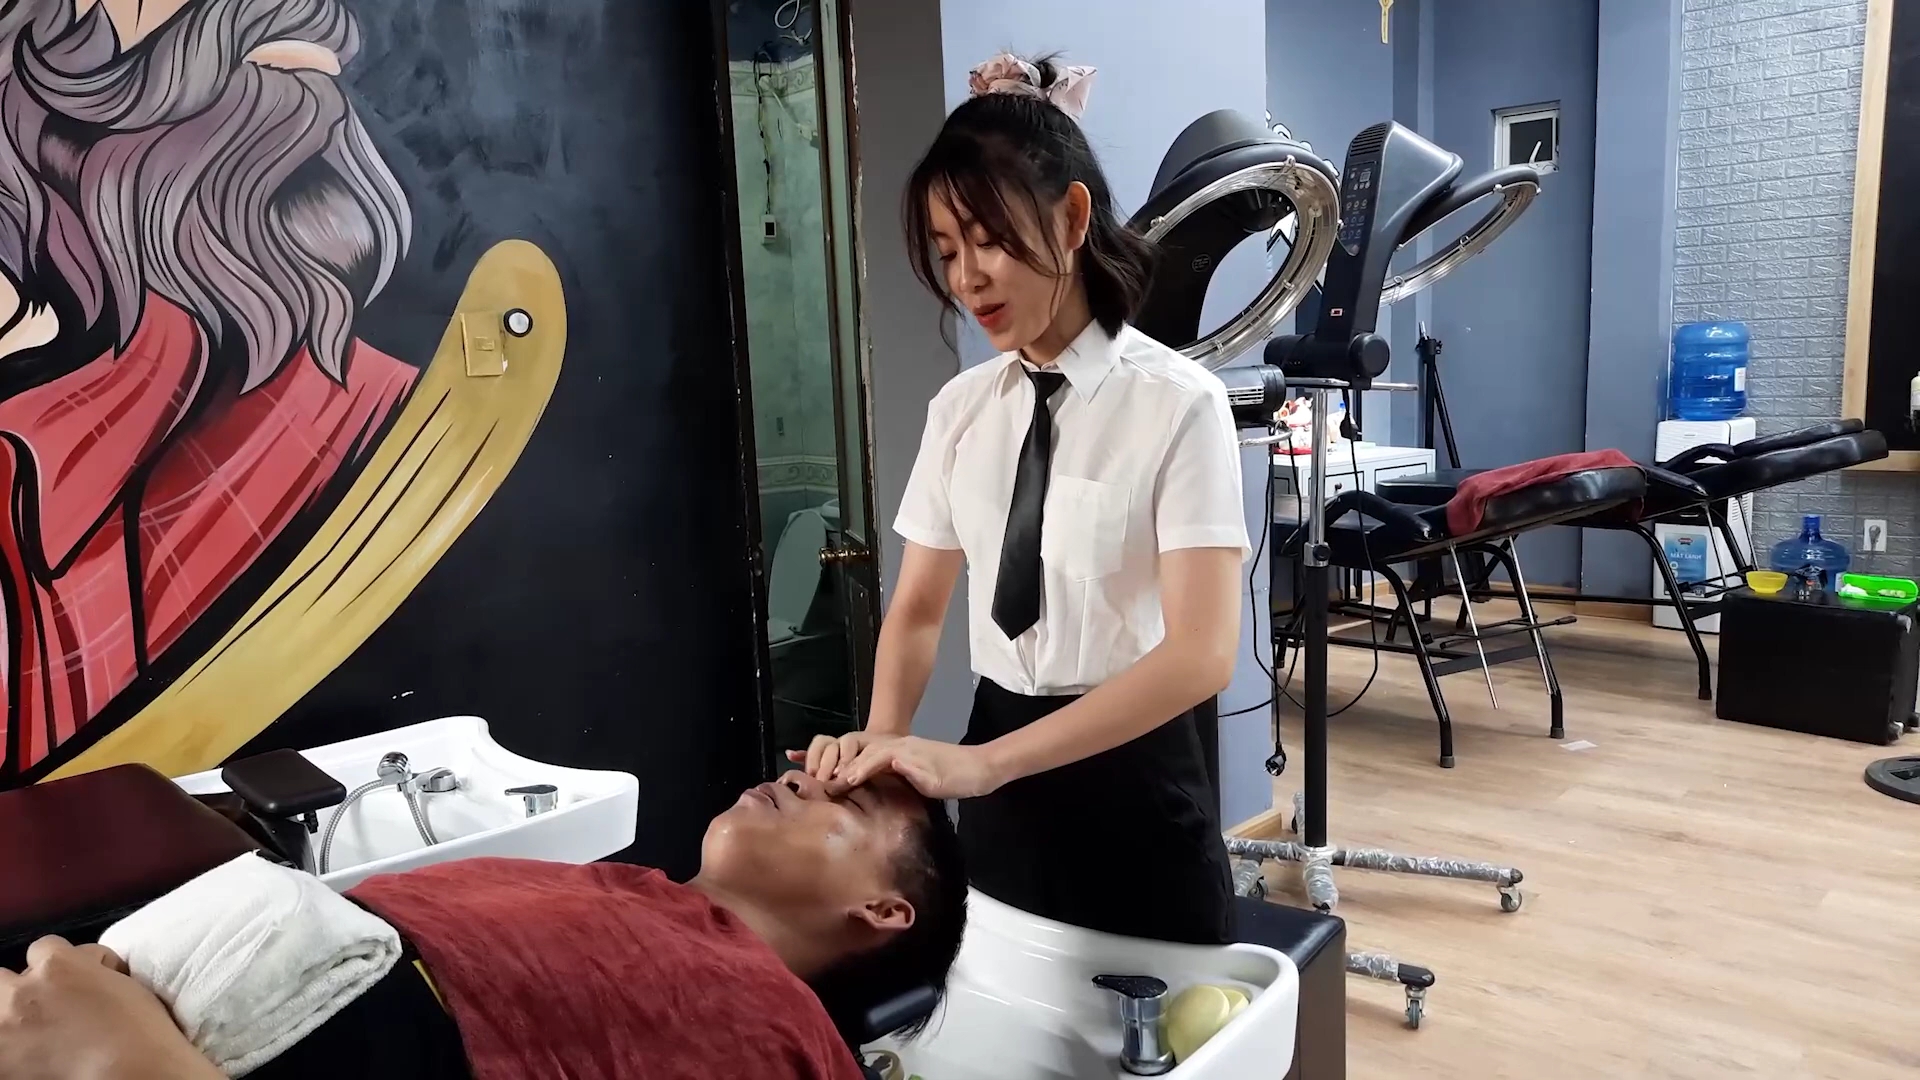 越南理发店系列1:漂亮的小姐姐帮你洗头按摩,舒爽又舒心